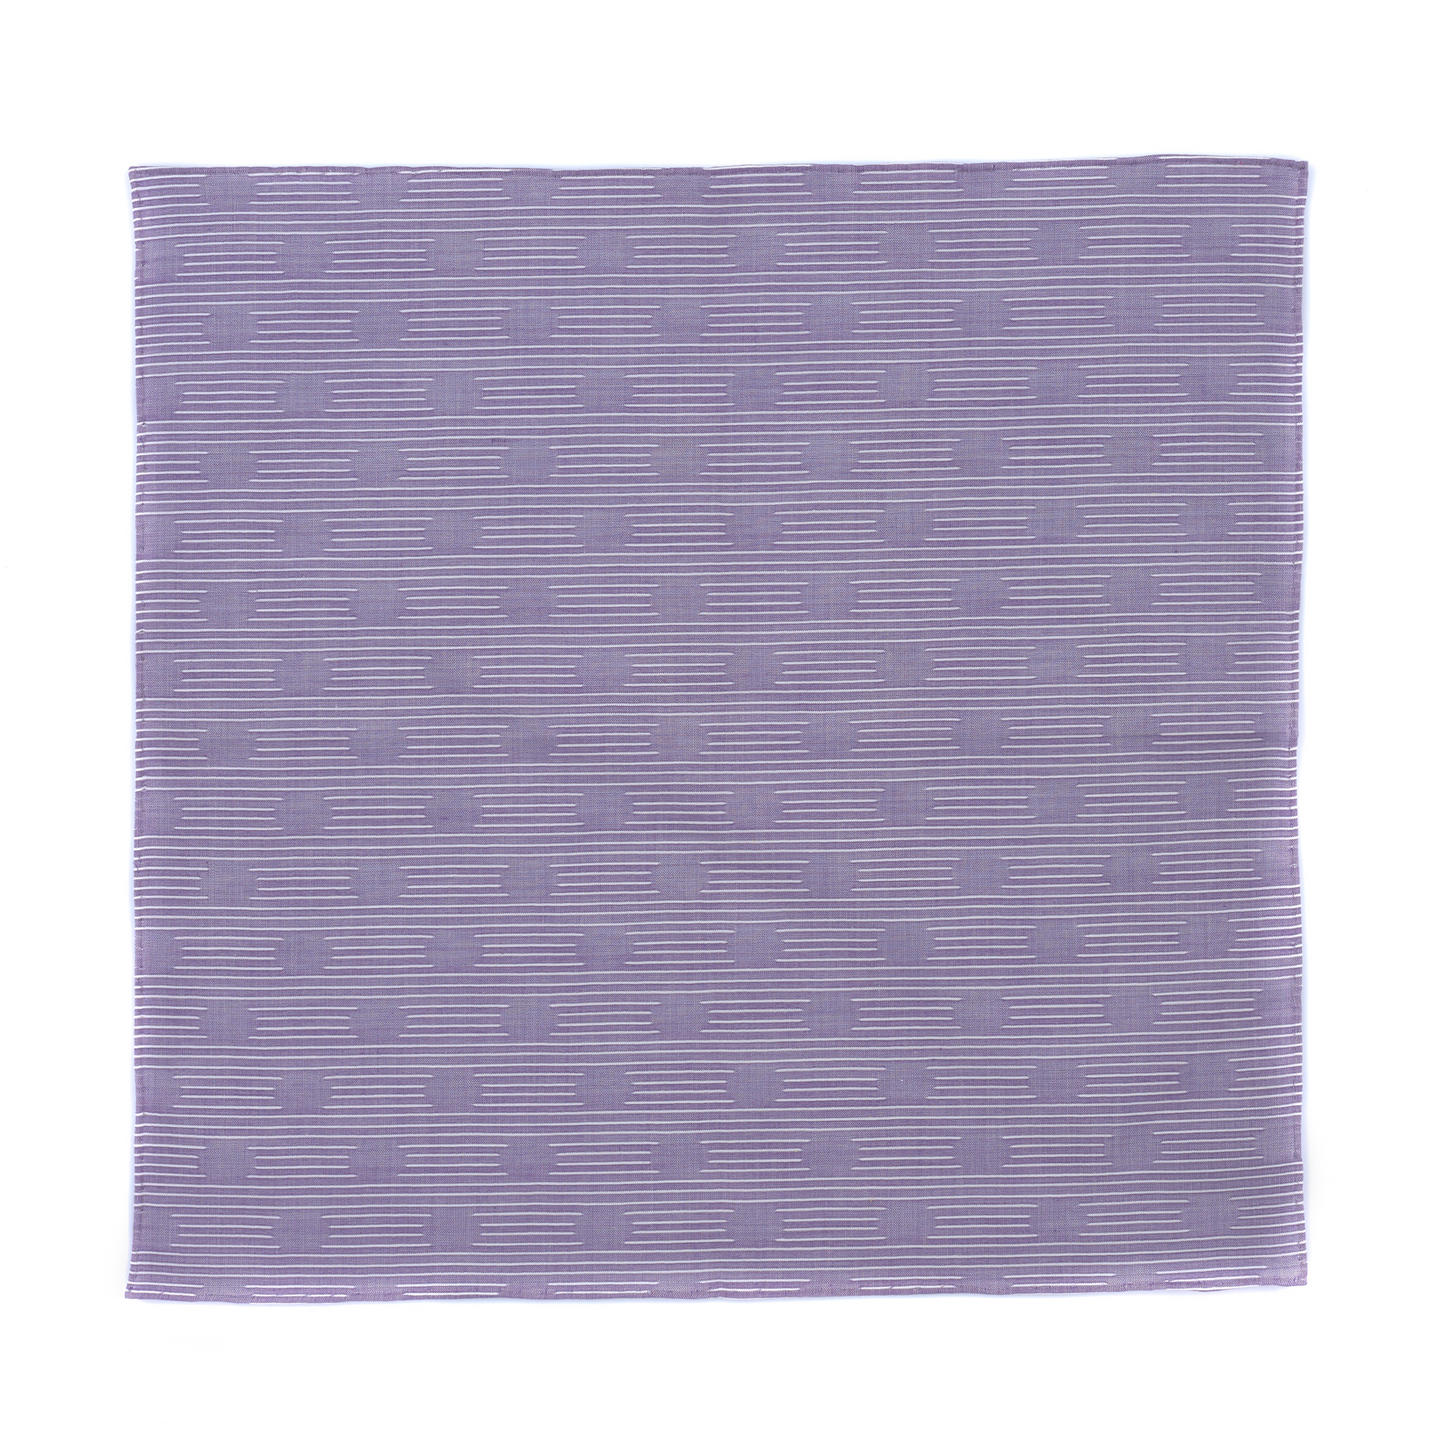 Bedrucktes Einstecktuch aus Baumwolle in Violett